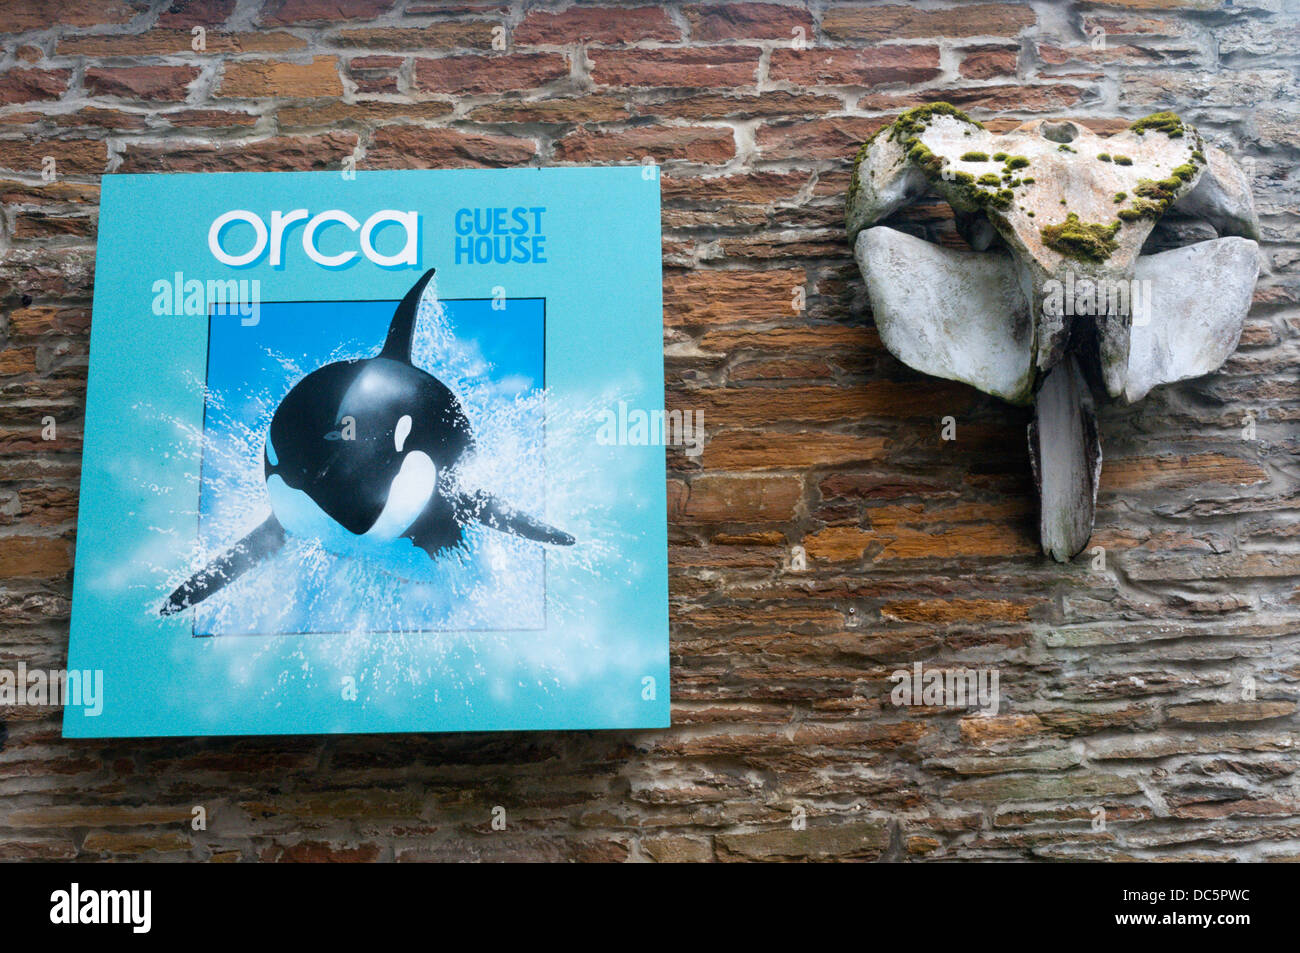 Melden Sie sich für das Orca-Gästehaus in Stromness, Orkney, neben einem großen Fischbein. Stockfoto